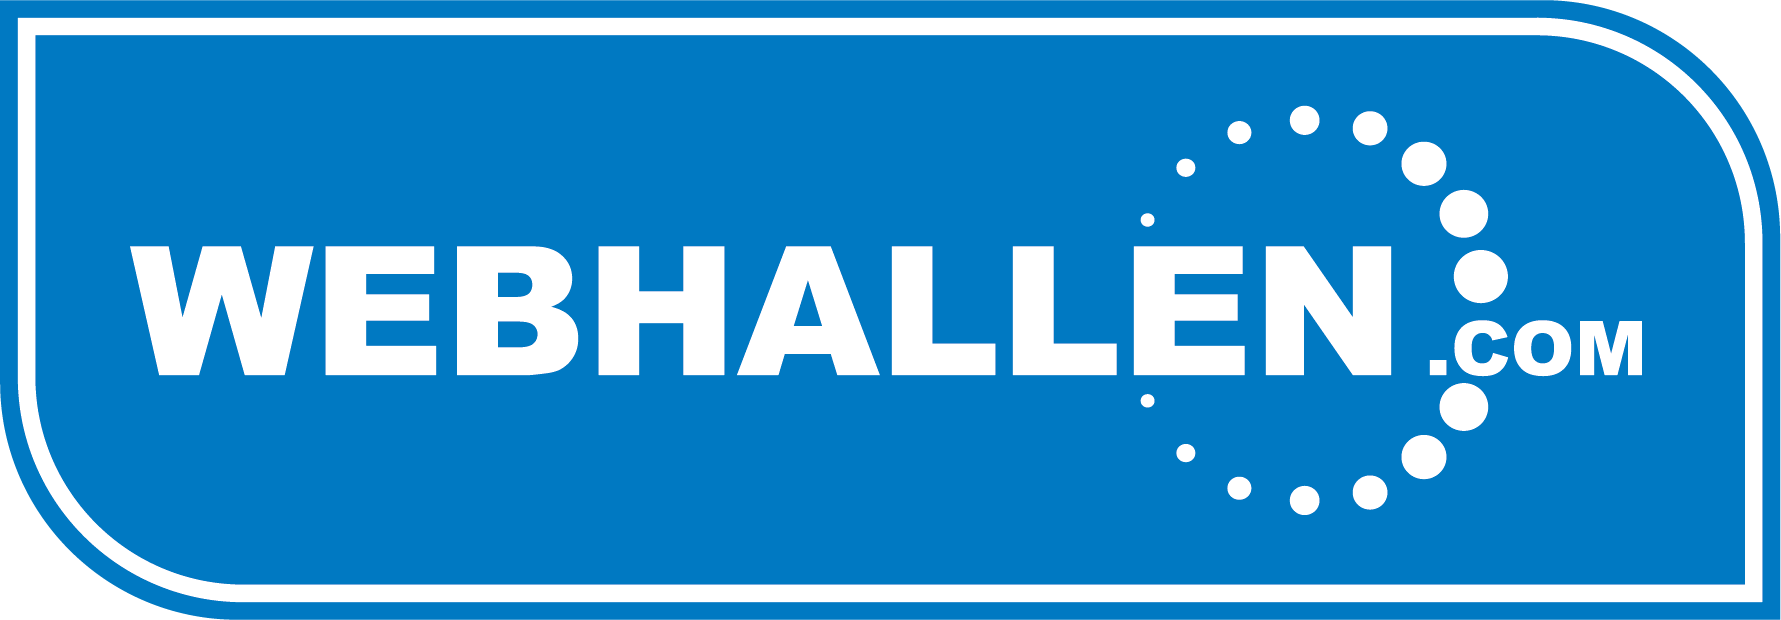 webhallen_logo